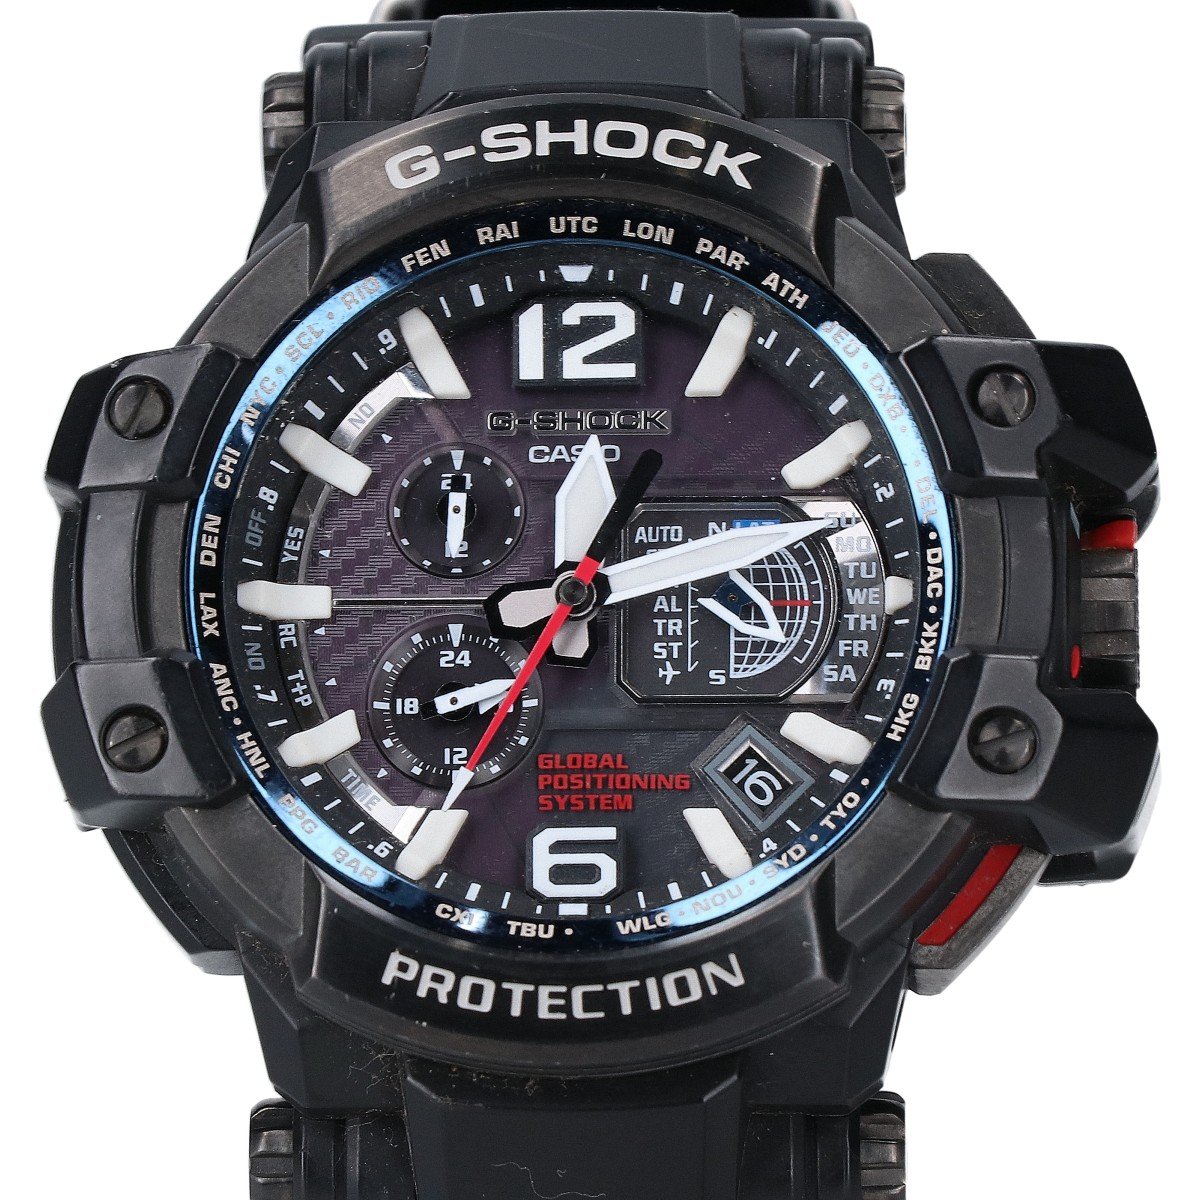 カシオのGPW-1000FC-1AJF MASTER OF G - AIR グラビティマスター 腕時計の買取実績です。